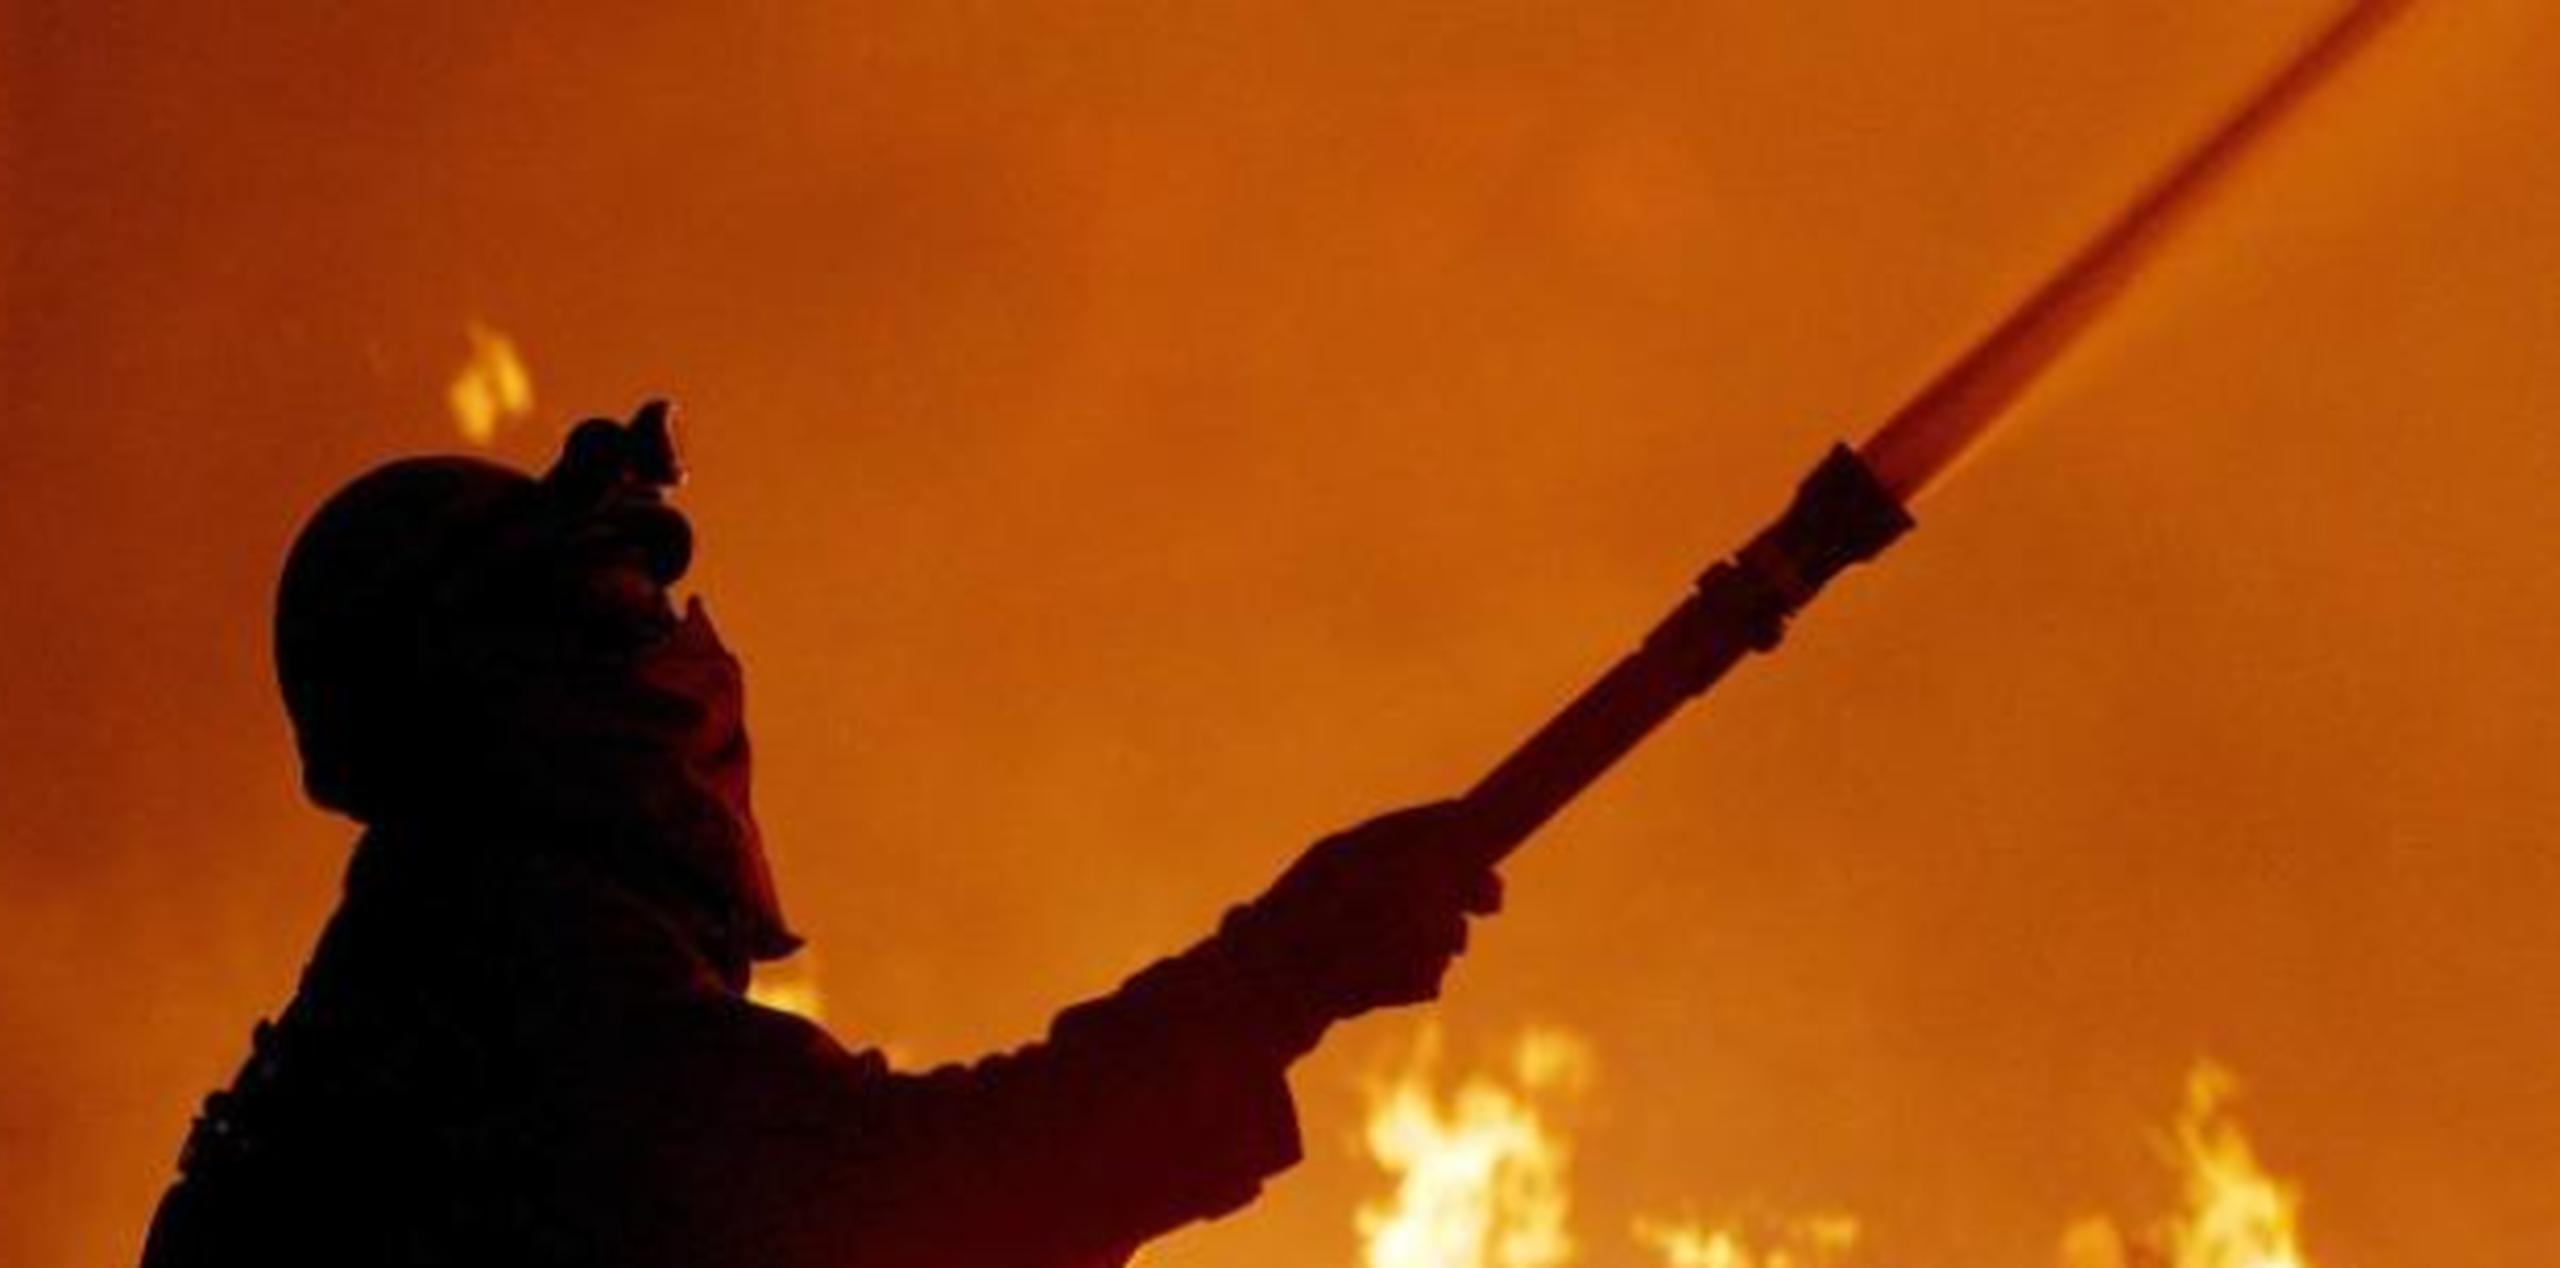 Bomberos de la estación de Aguadilla y de otros pueblos limítrofes se encuentran en el lugar combatiendo el incendio junto a otras agencias. (Archivo)